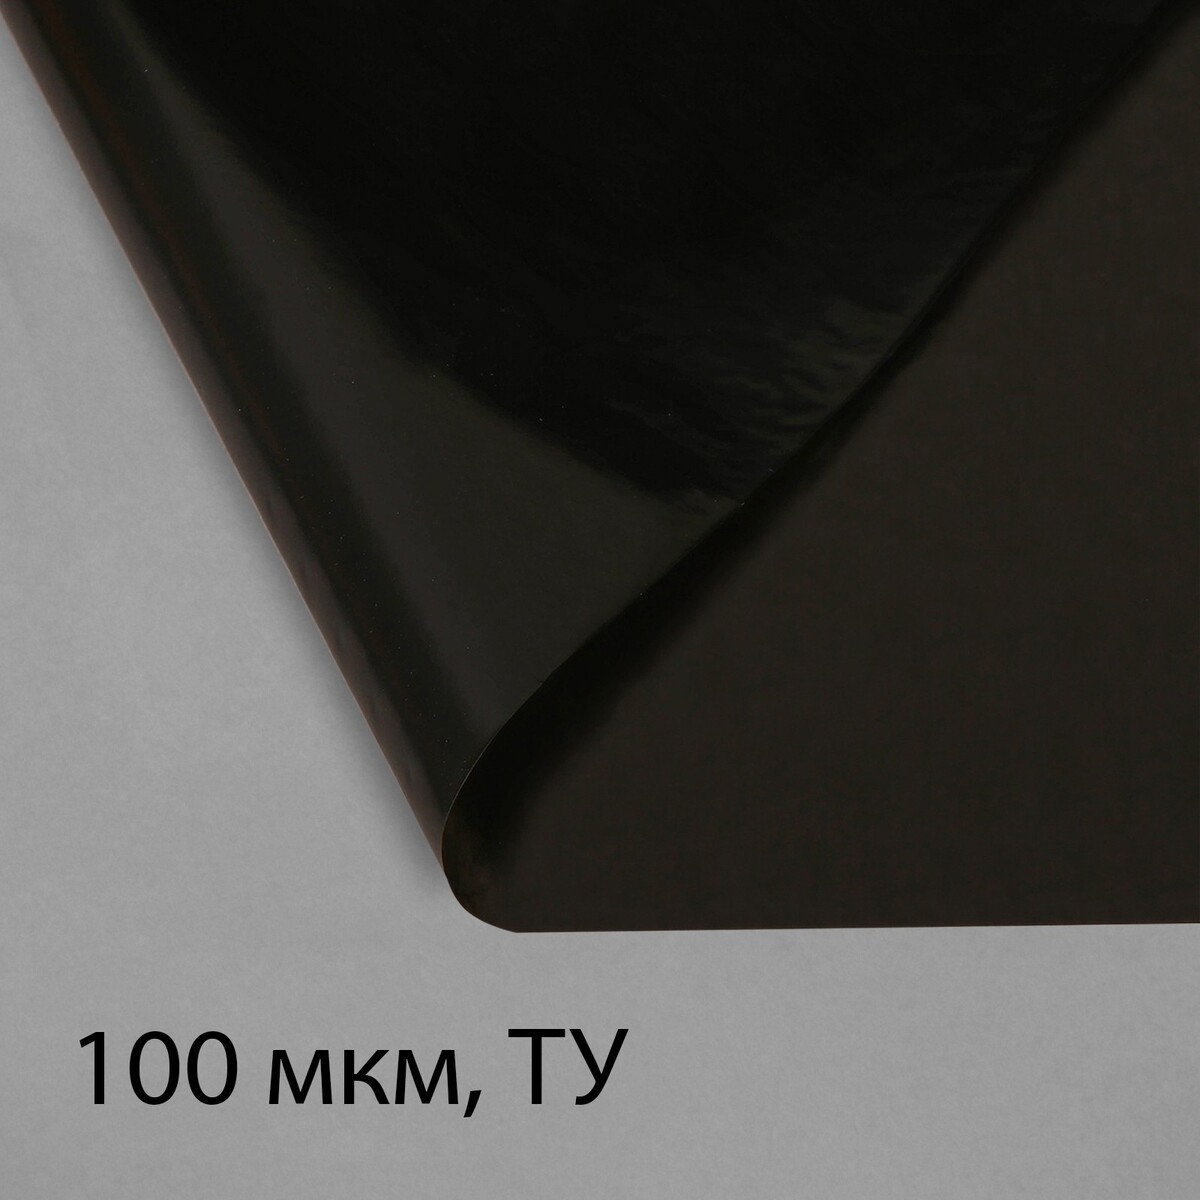 Пленка полиэтиленовая, техническая, 100 мкм, черная, длина 10 м, ширина 3 м, рукав (1.5 м × 2), эконом 50% пленка из полиэтилена техническая толщина 200 мкм черная 10 × 3 м рукав 1 5 м × 2 эконом 50%